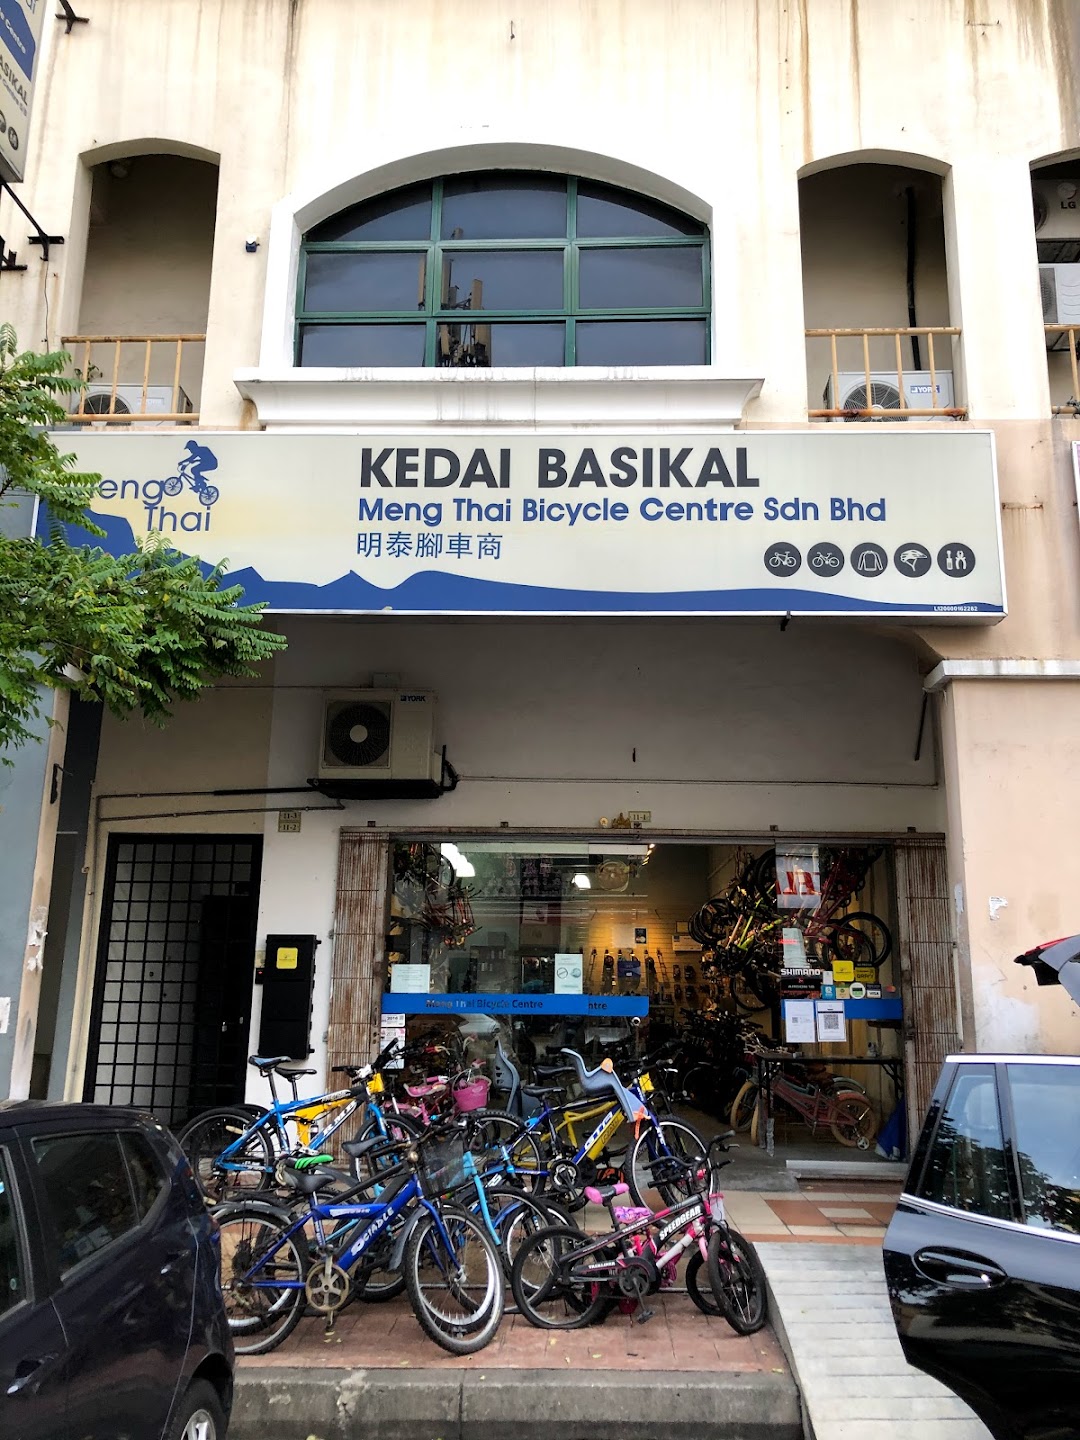 Kedai Basikal Kota Damansara